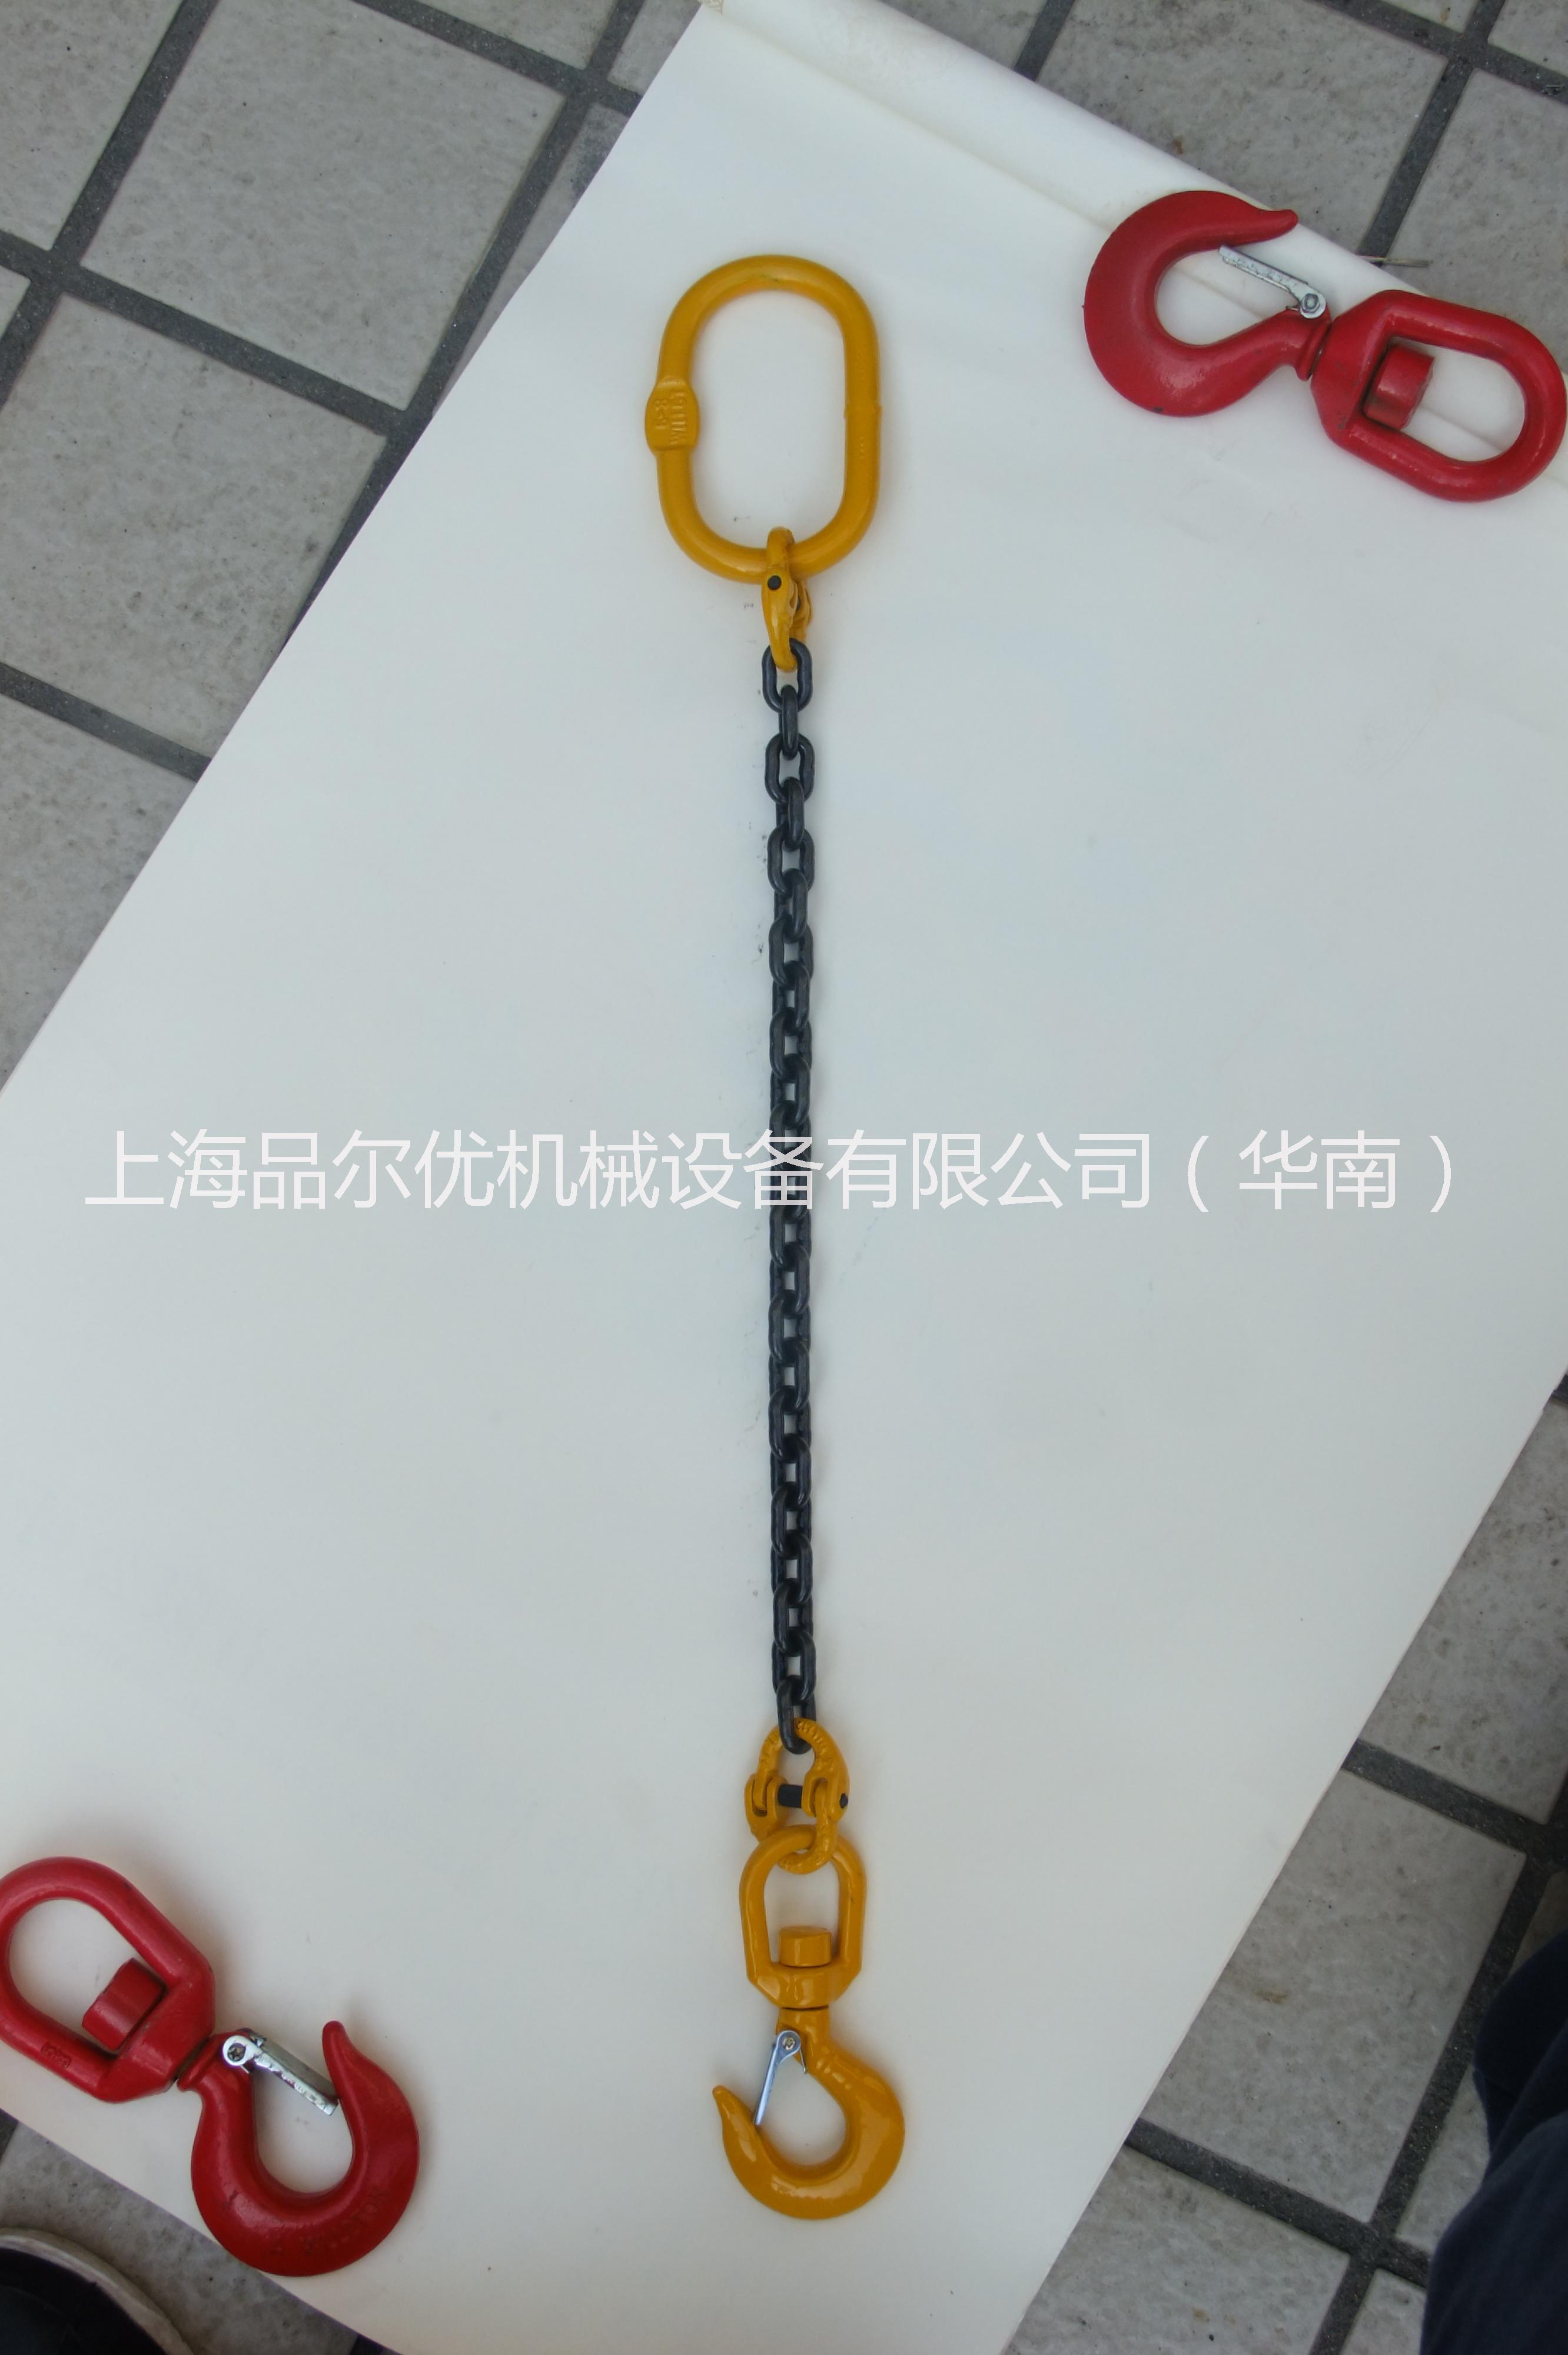 供应用于起重的上海品尔优单腿链条索具 链条索具 链条索具咨询13061916302,，链条索具报价，链条索具规格图片